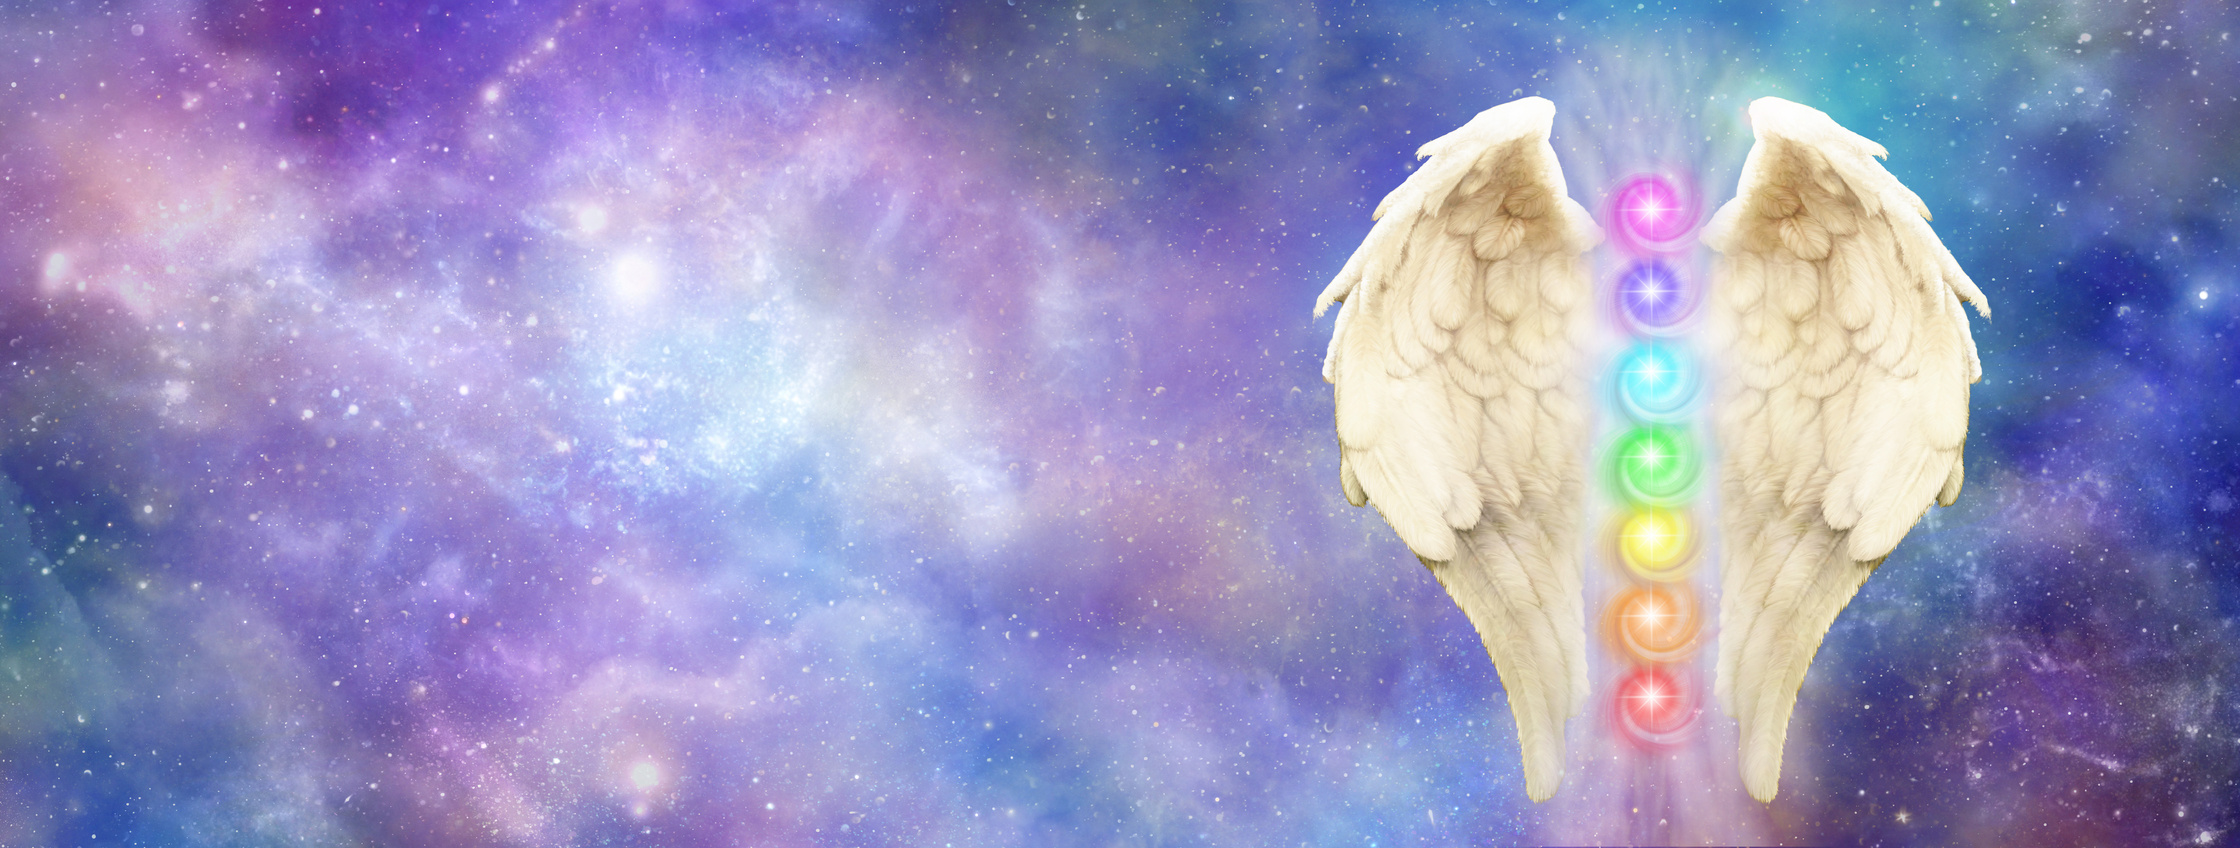 Angelic Cosmic Guardian